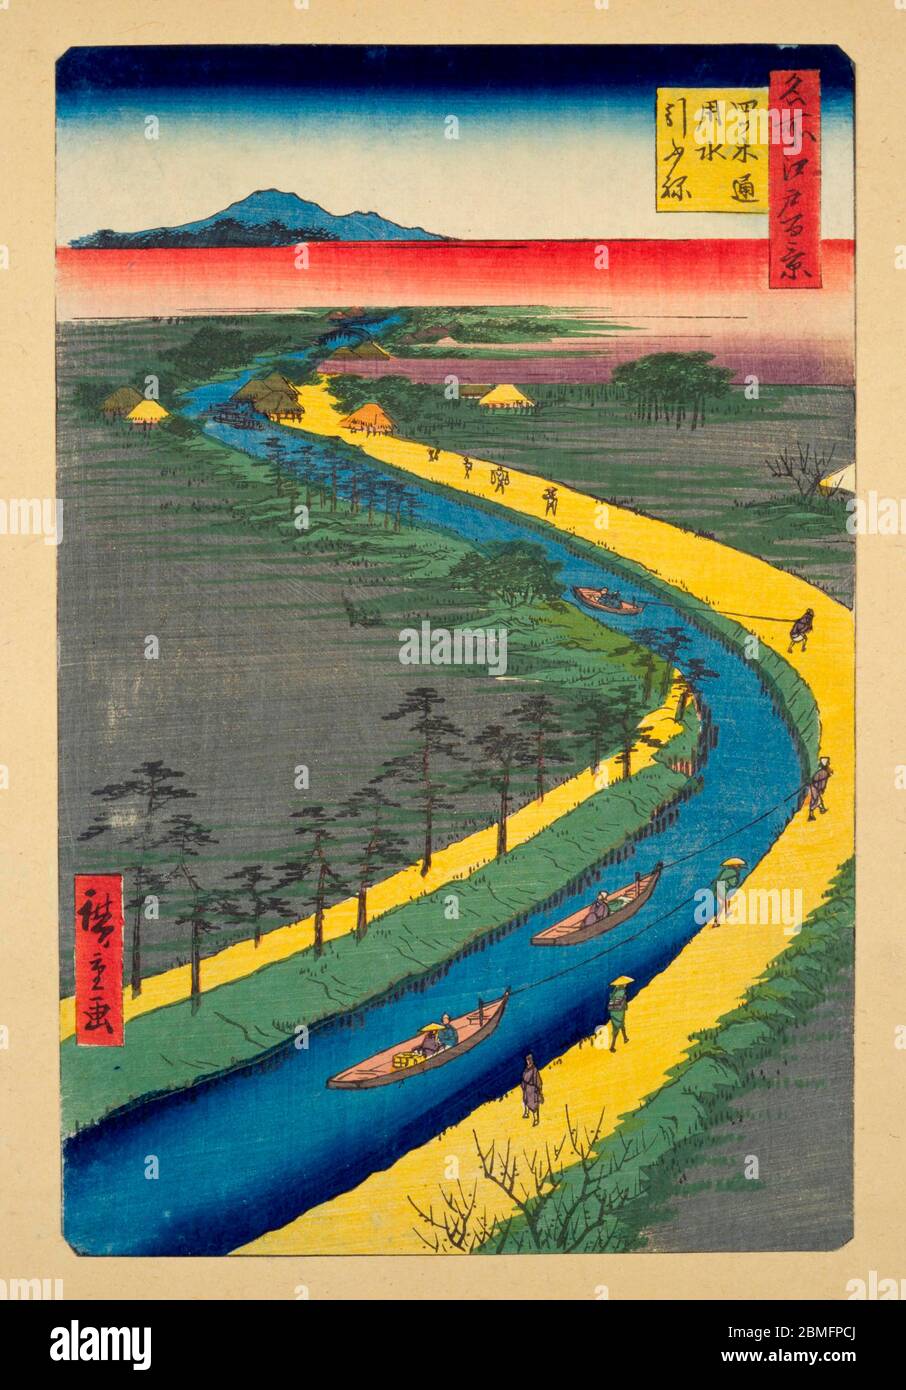 [ 1850er Japan - Schleppboote ziehen ] - Arbeiter Schleppboote auf dem Yotsugi-dori Kanal in der Nähe von Edo (aktuelle Tokyo), 1857 (Ansei 4). Dieser Holzschnitt ist Bild 33 in hundert berühmten Ansichten von Edo (名所江戸百景, Meisho Edo Hyakkei), einer Serie von Ukiyoe Künstler Utagawa Hiroshige (歌川広重, 1797–1858) erstellt. Es ist eine von 42 Frühlingsszenen der Serie. Titel: Schleppboote entlang des Yotsugi-dori Kanals (四ツ木通用水引ふね, Yotsugi dori yosui hikifune) 19. Jahrhundert Vintage Ukiyoe Holzschnitt. Stockfoto